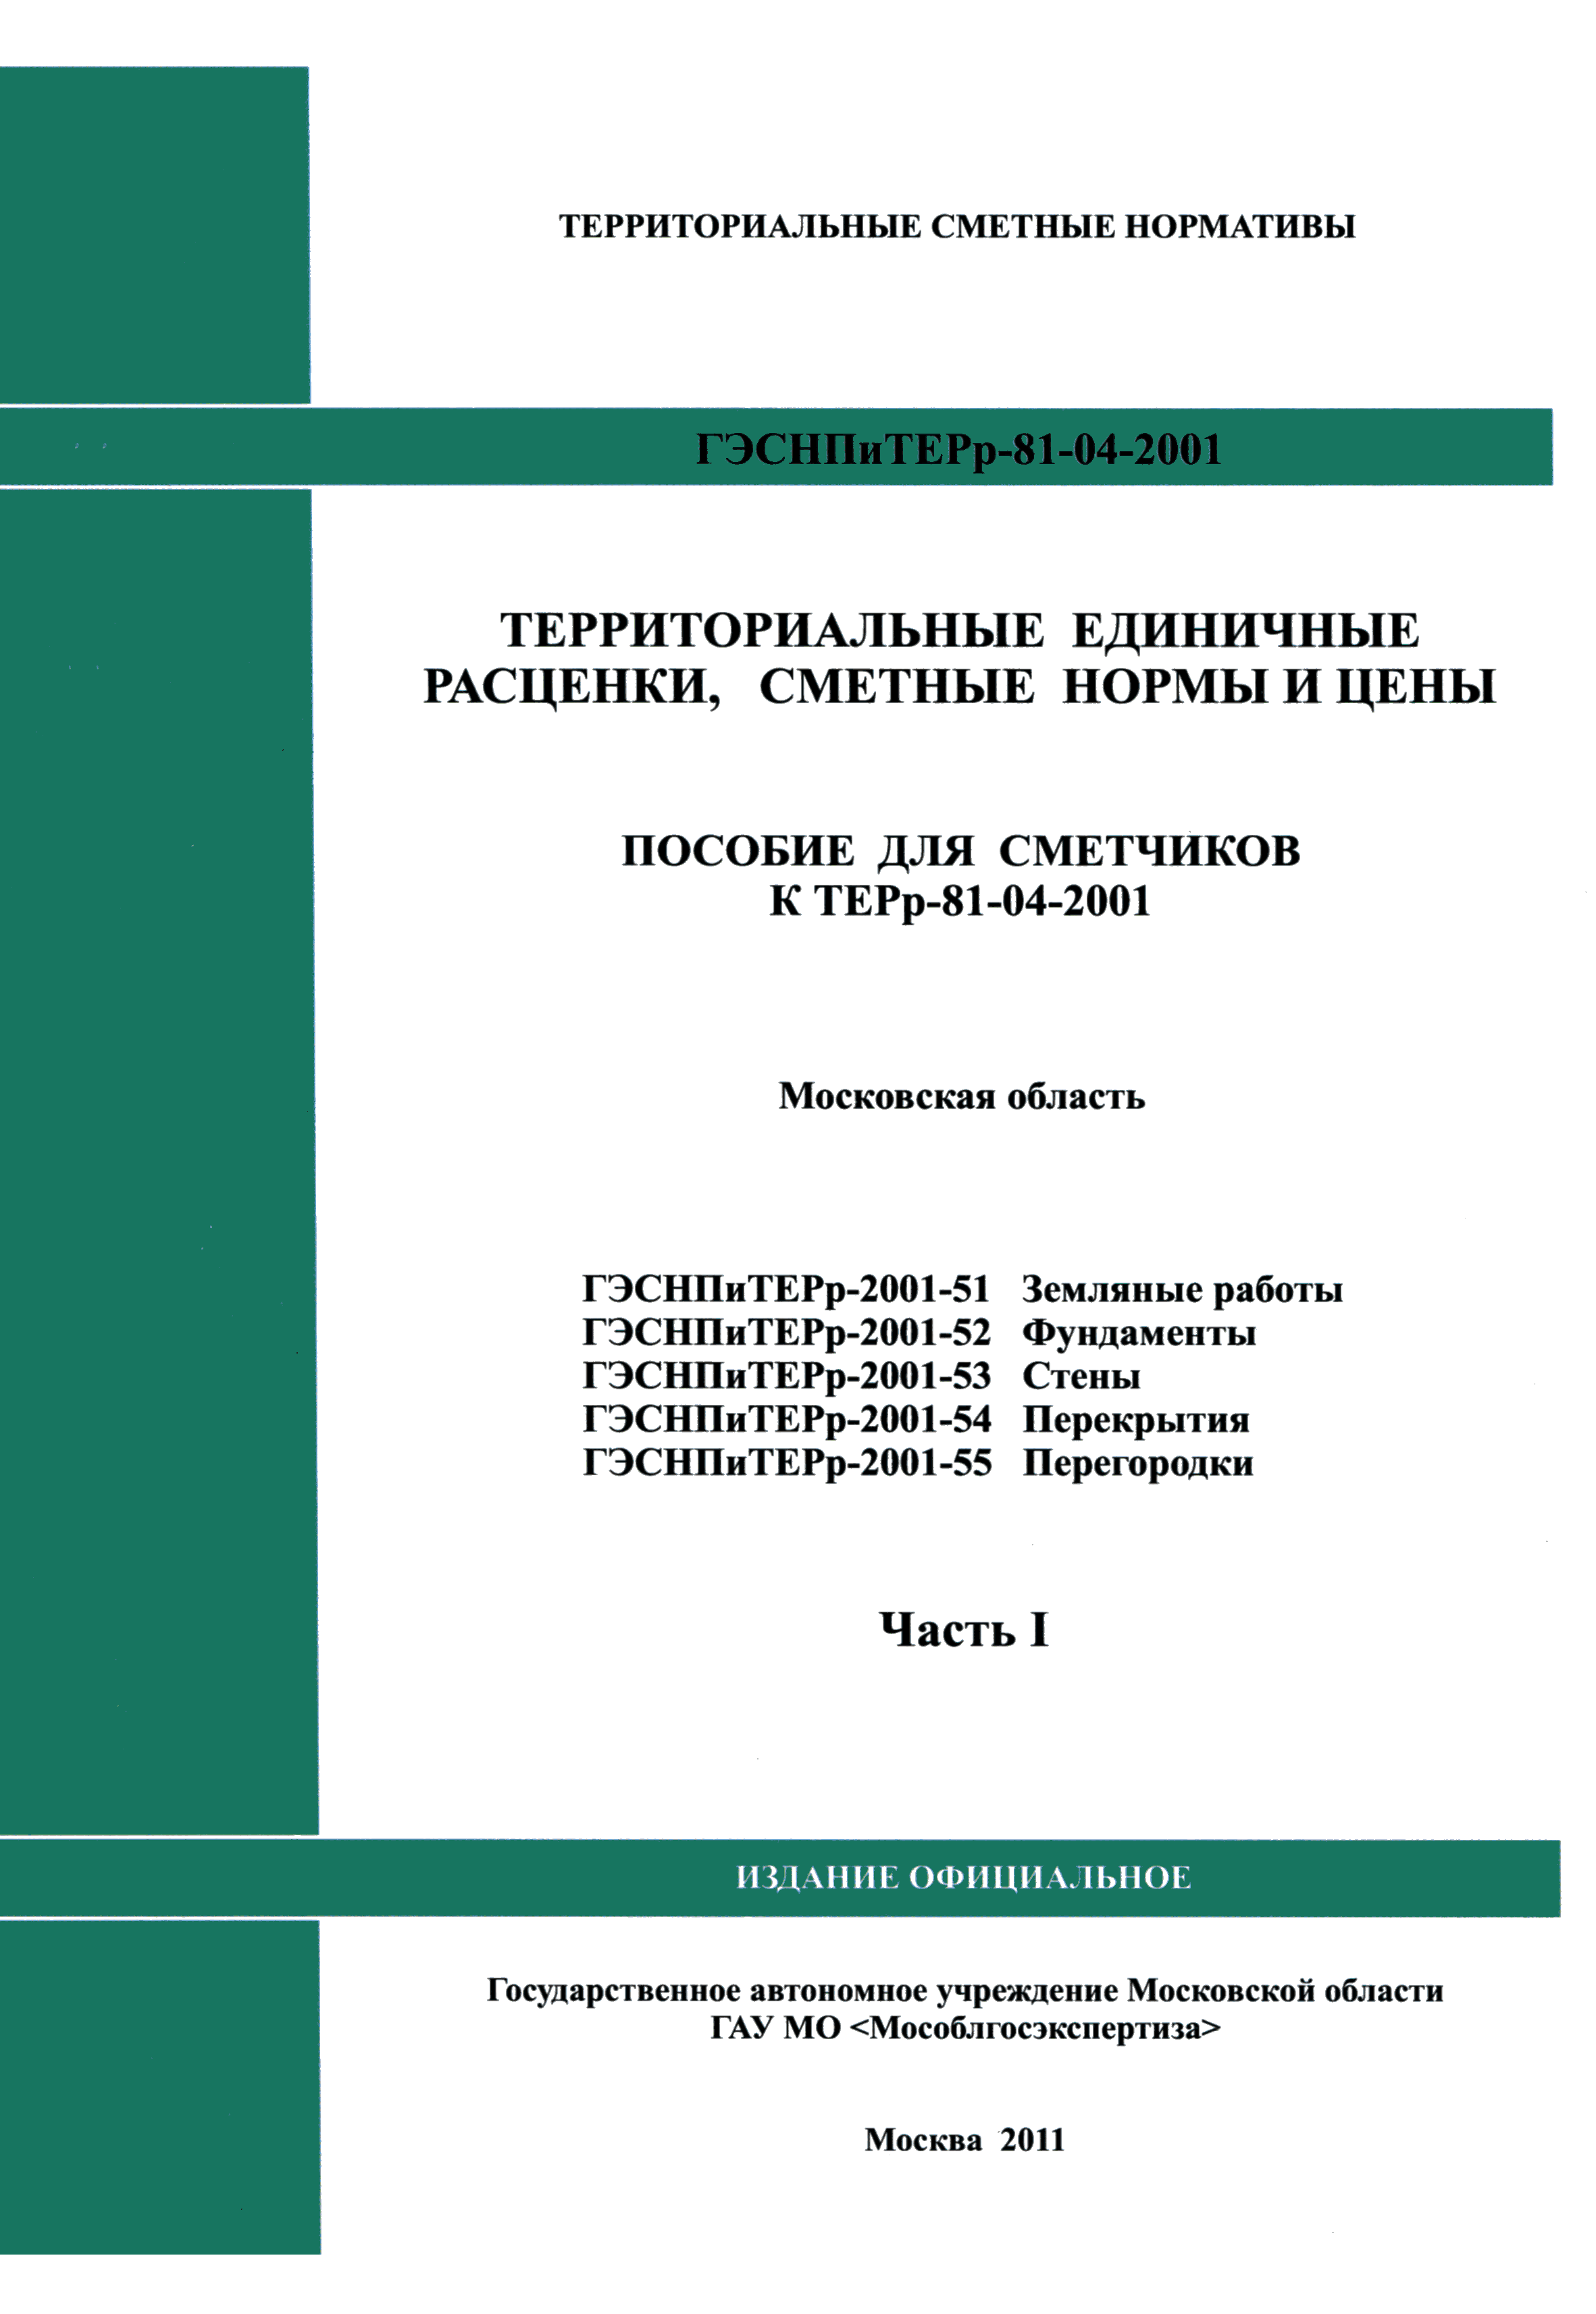 ГЭСНПиТЕРр 2001-55 Московской области